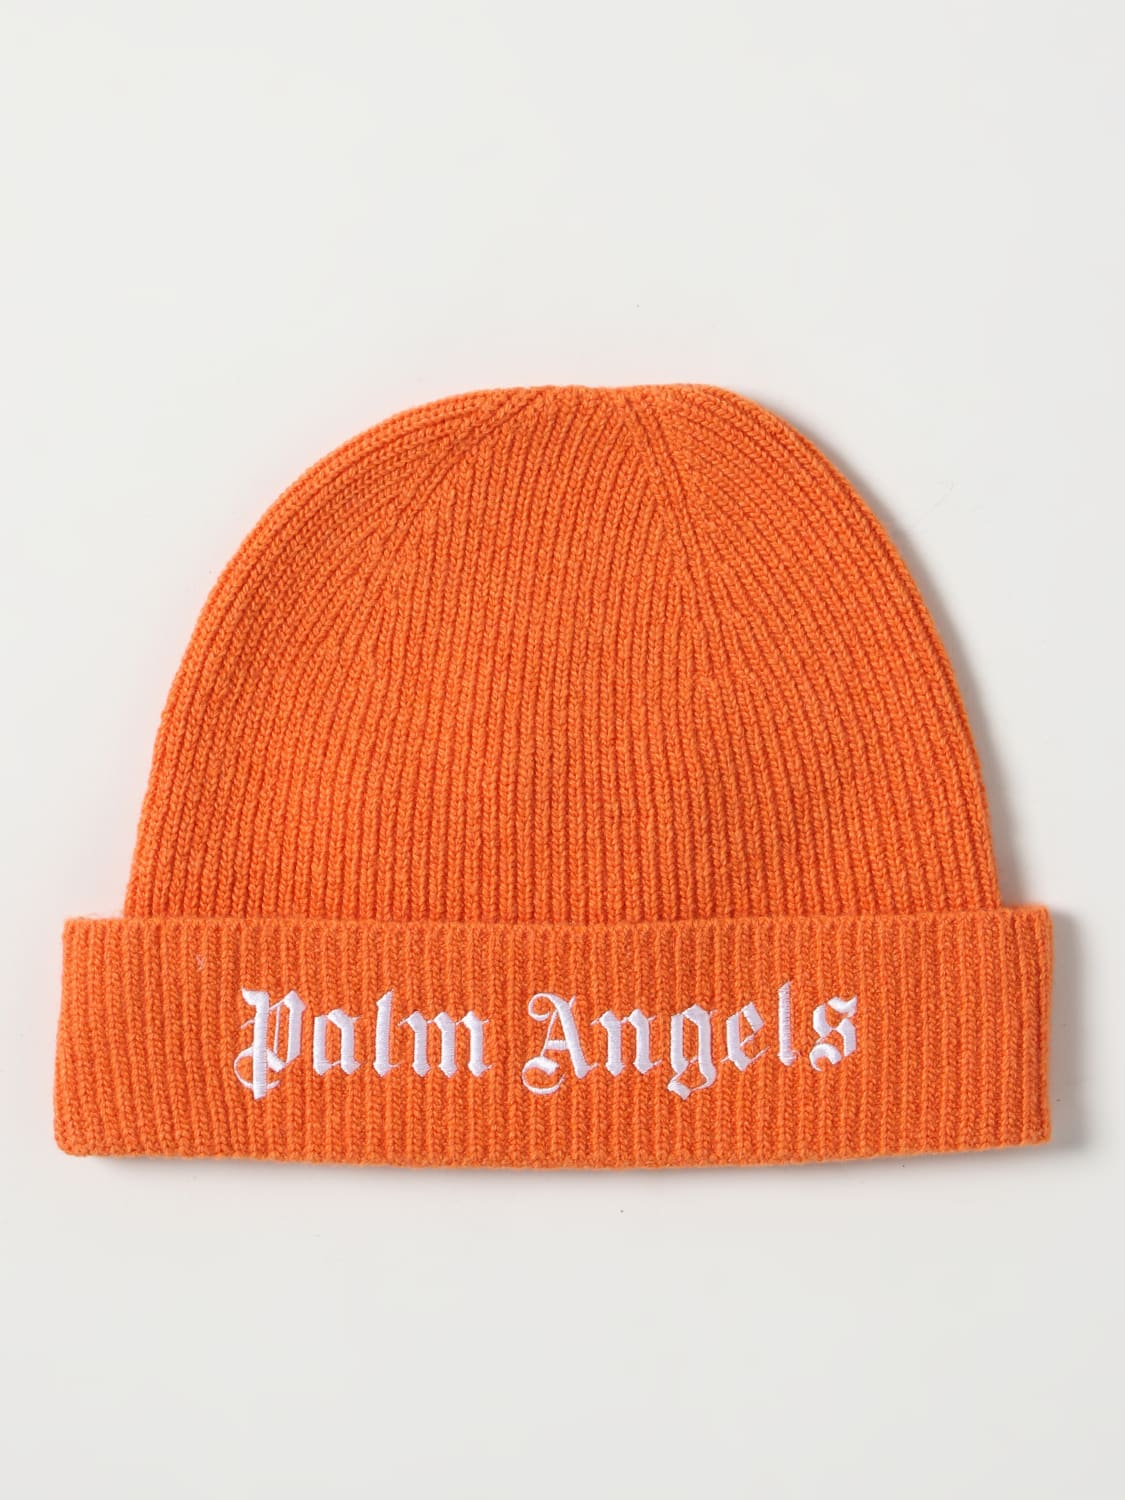 Palm Angels Outlet: hat for kids - Orange | Palm Angels hat